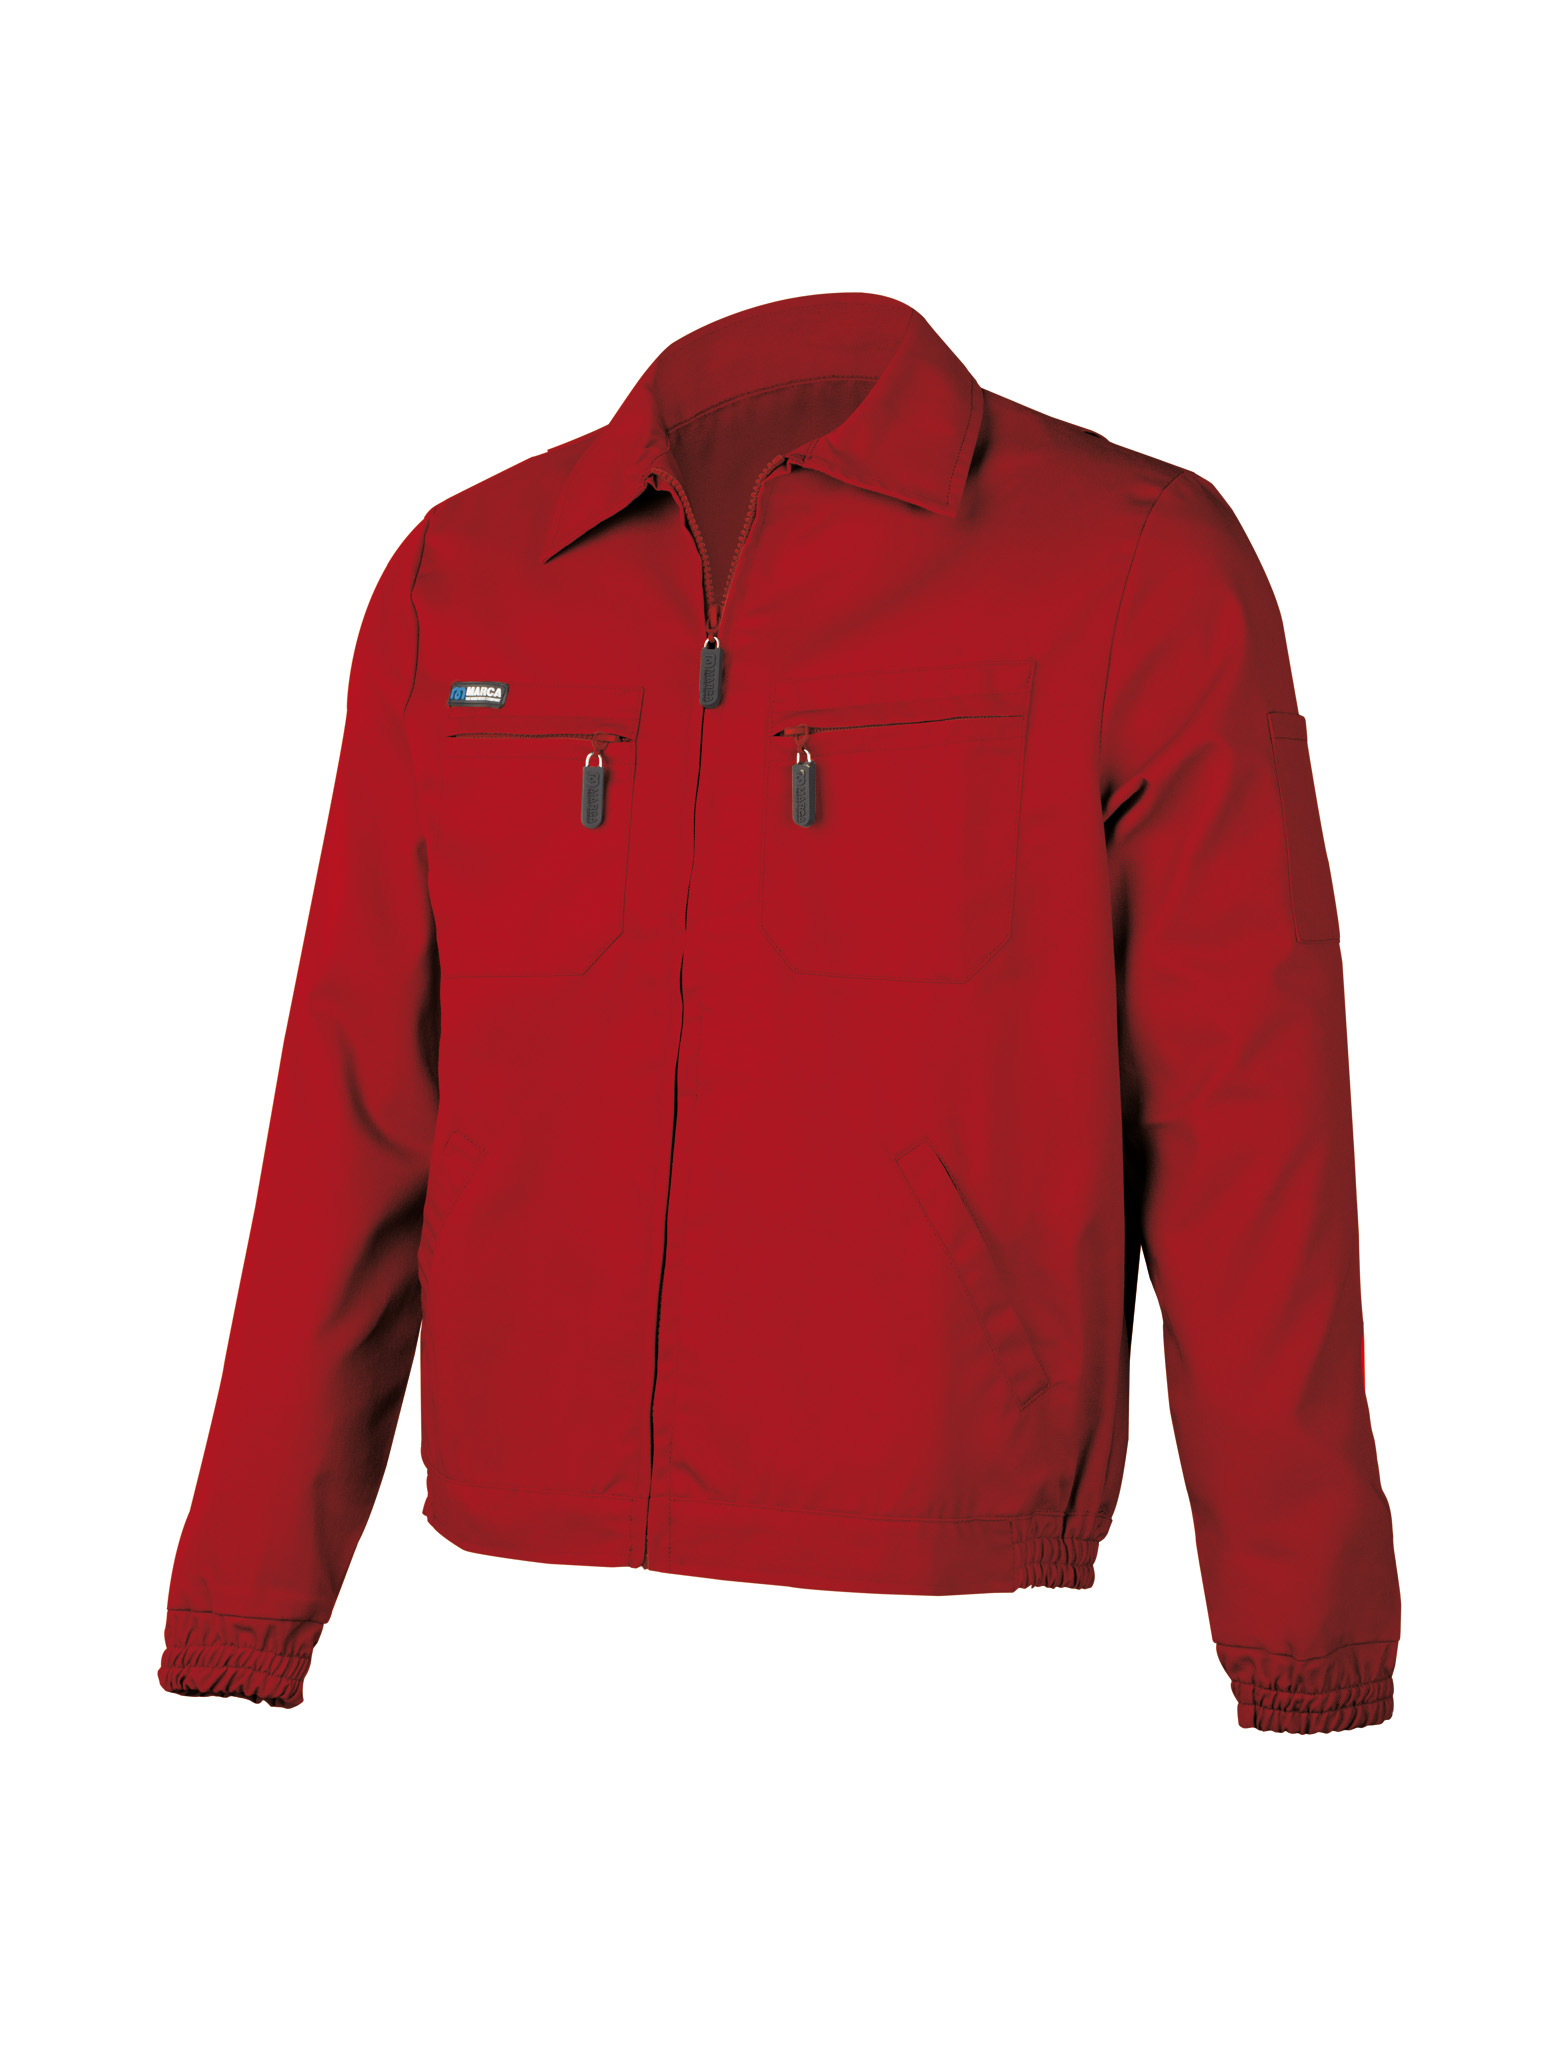 488-CR Top Vestuario Laboral Serie Top Chaqueta roja poliéster/algodón de 245 g.